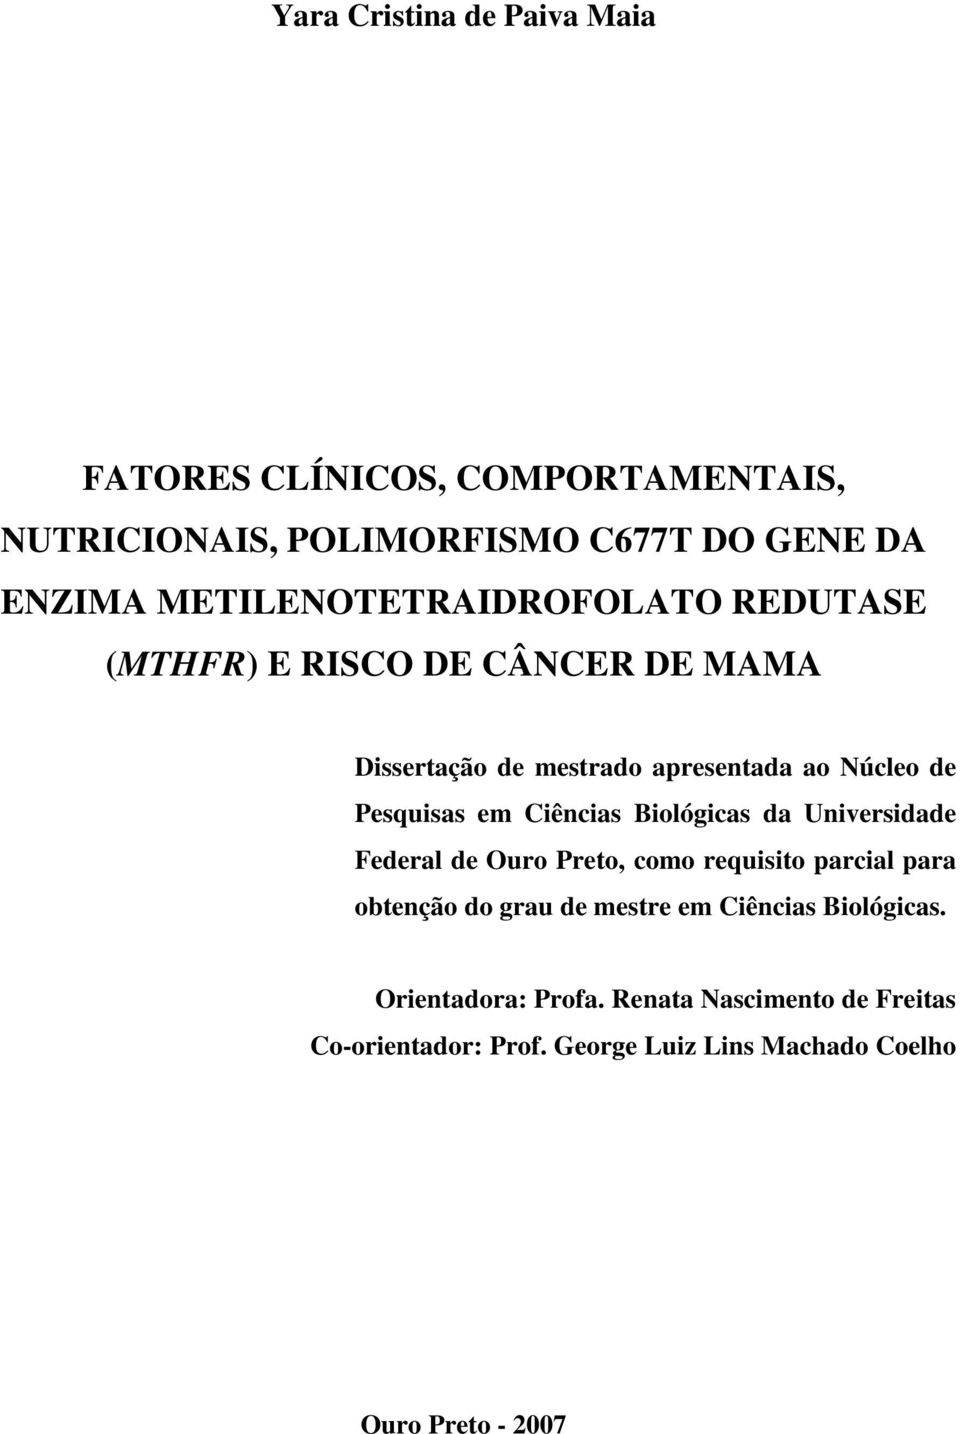 Pesquisas em Ciências Biológicas da Universidade Federal de Ouro Preto, como requisito parcial para obtenção do grau de